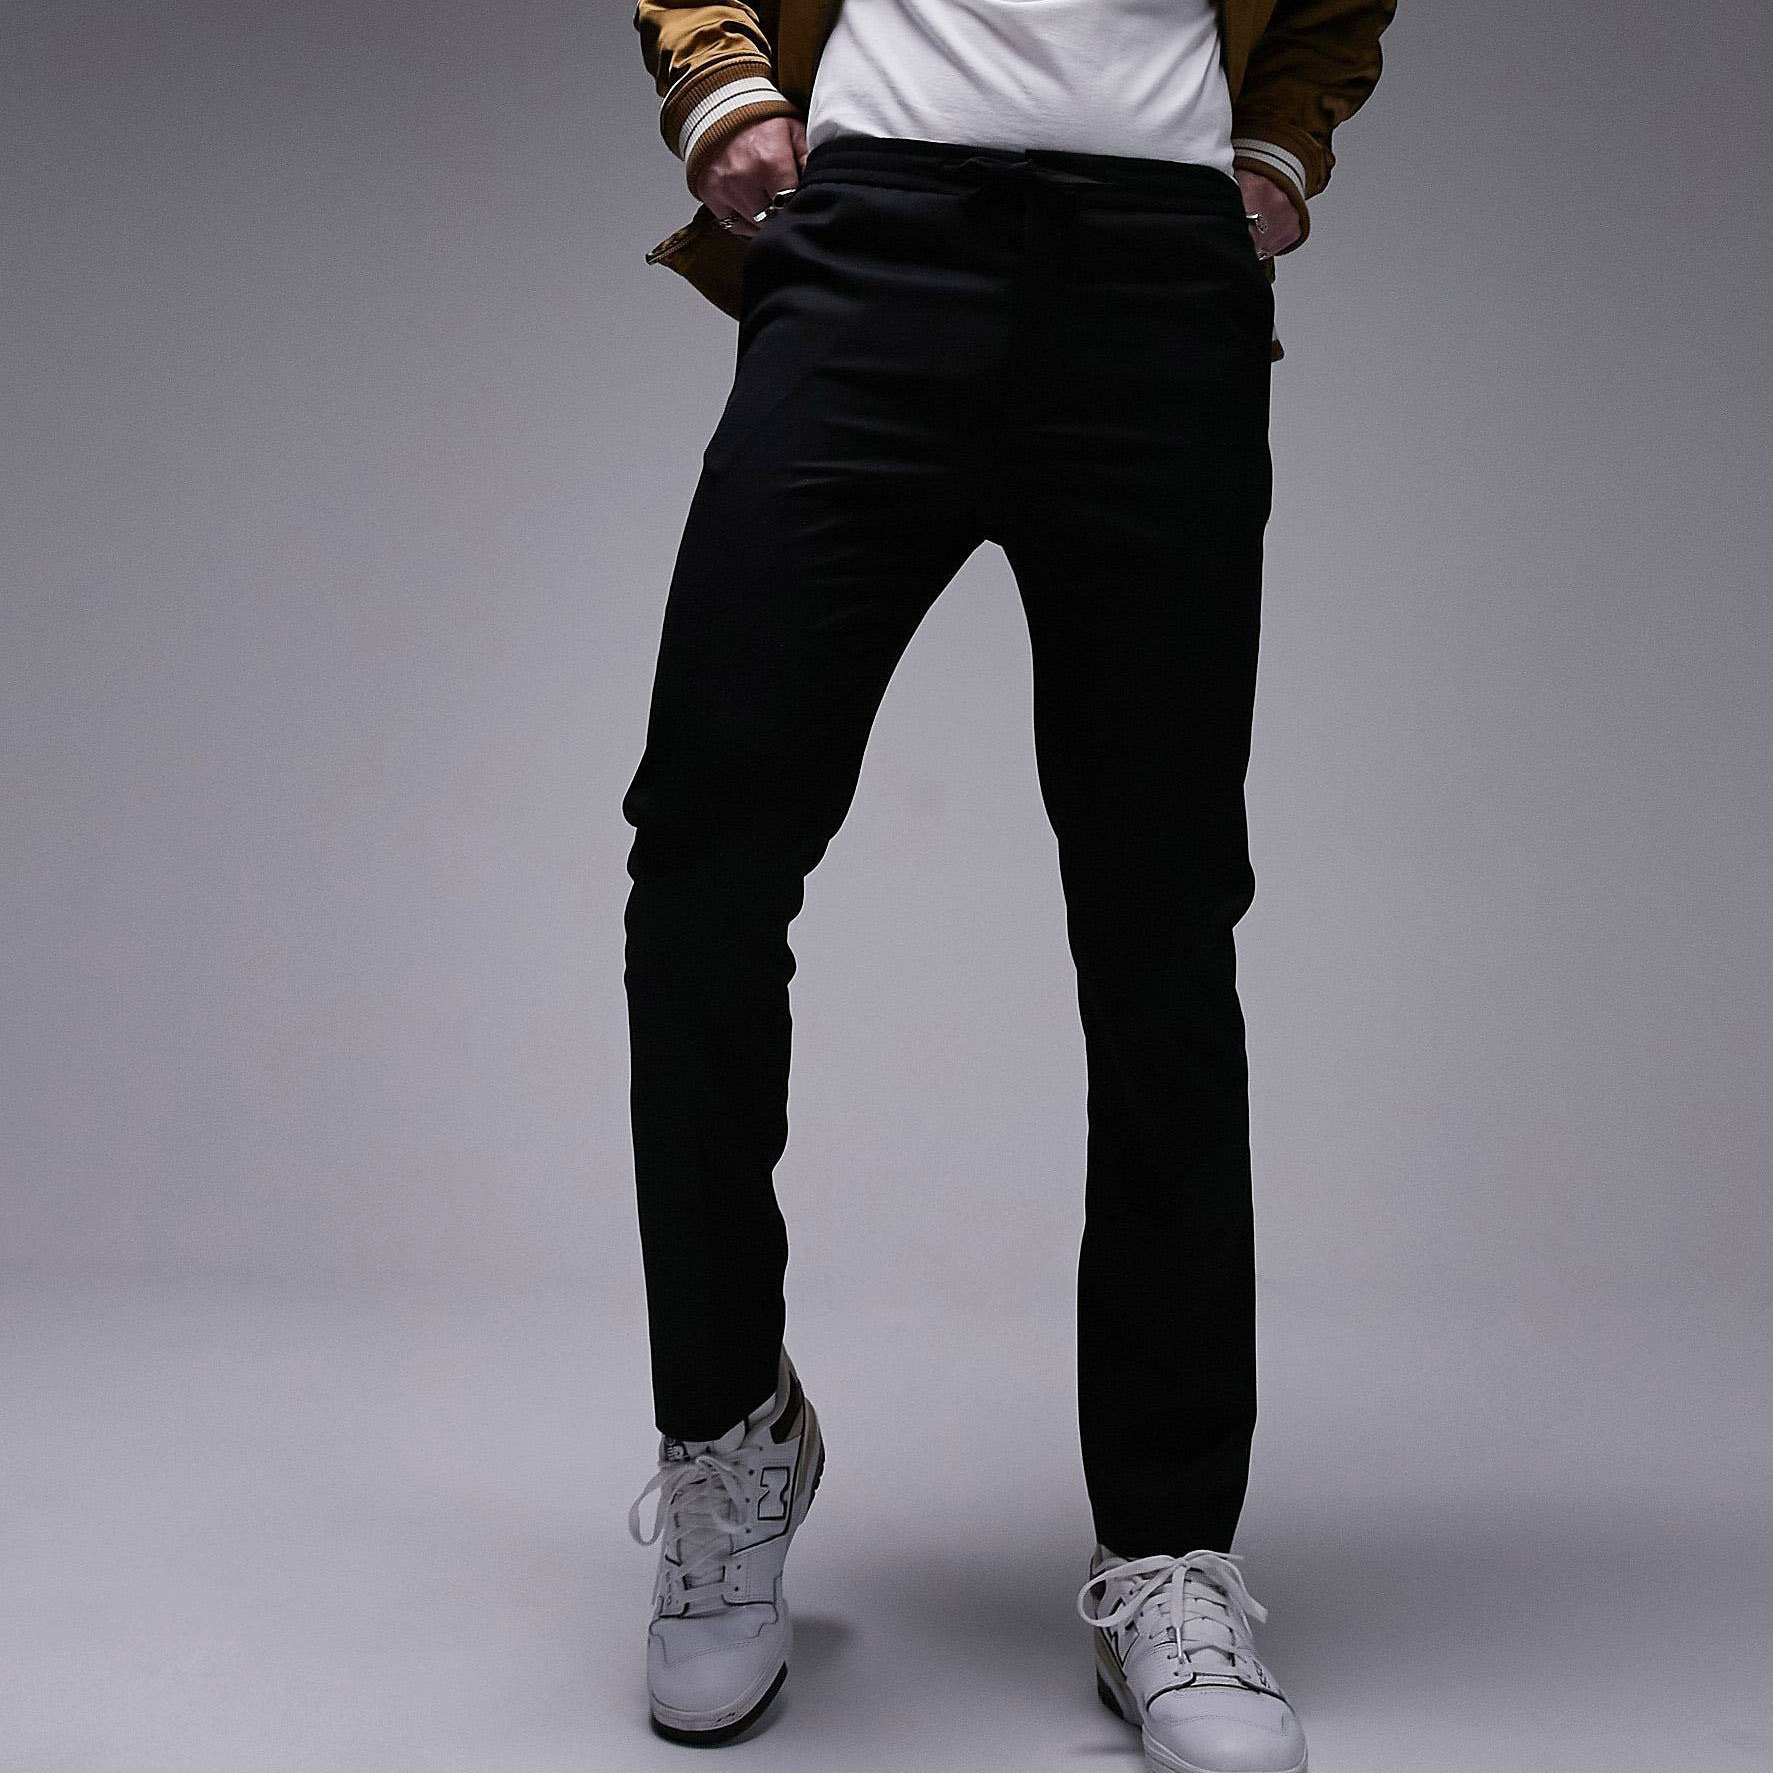 Брюки Topman Skinny Smart With Elastic Waistband, черный зауженные брюки с эластичным поясом zarina 9421209702 серый 48